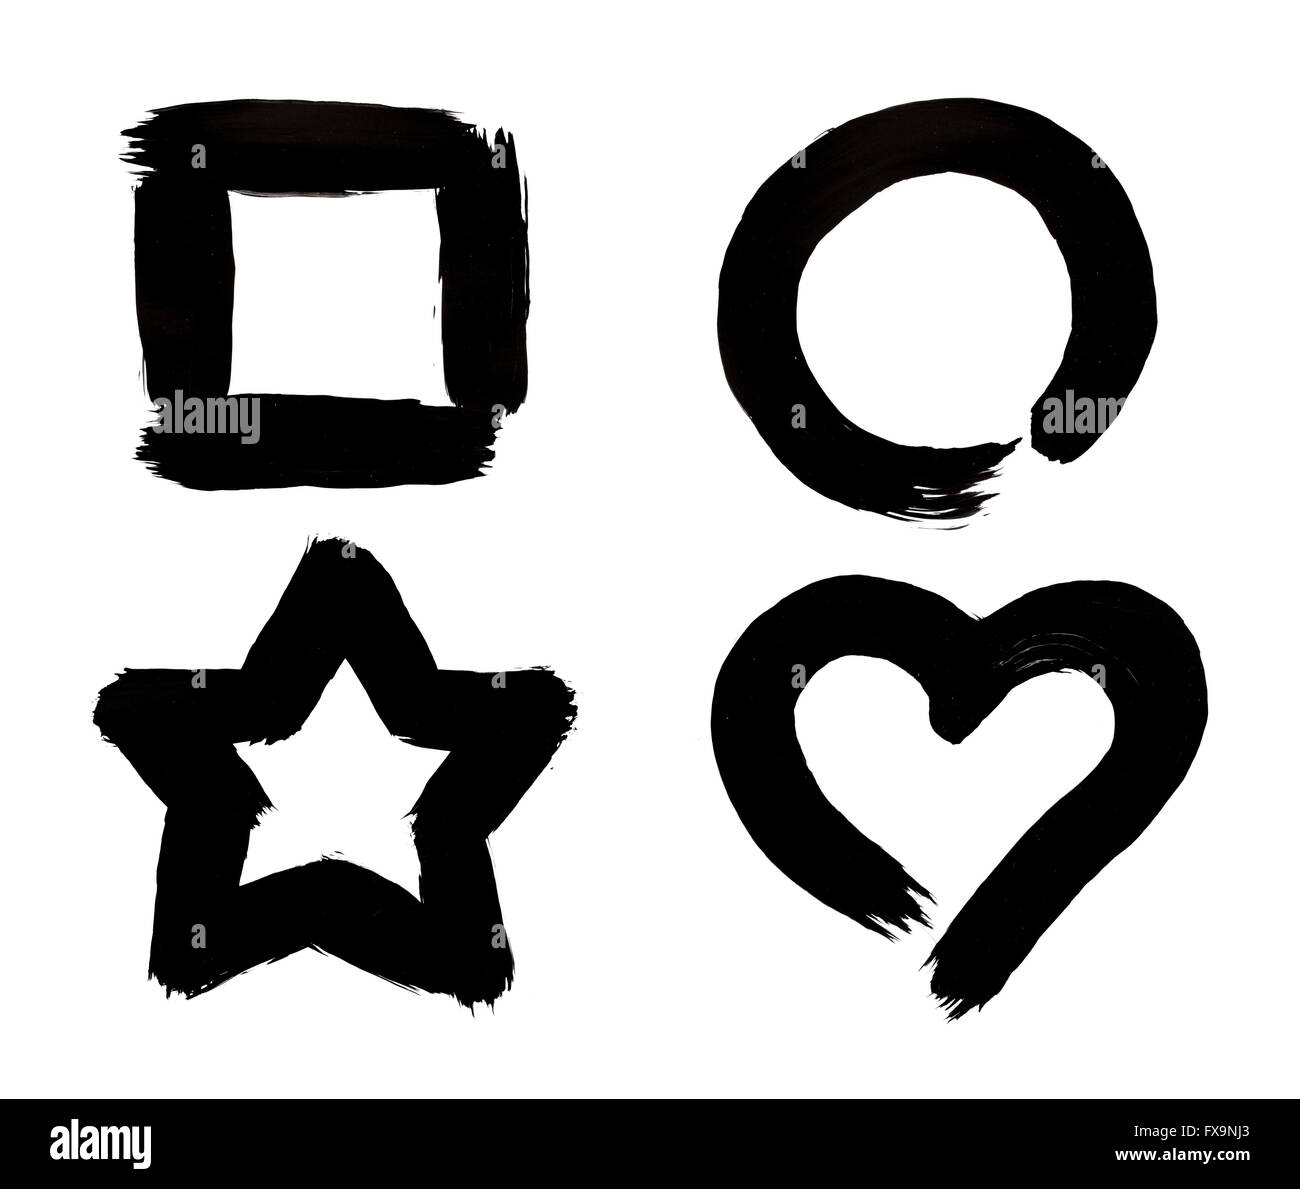 Cuadrado, Círculo, estrellas y símbolos de corazón aislado pinceladas de Pintura negra sobre fondo blanco. Foto de stock